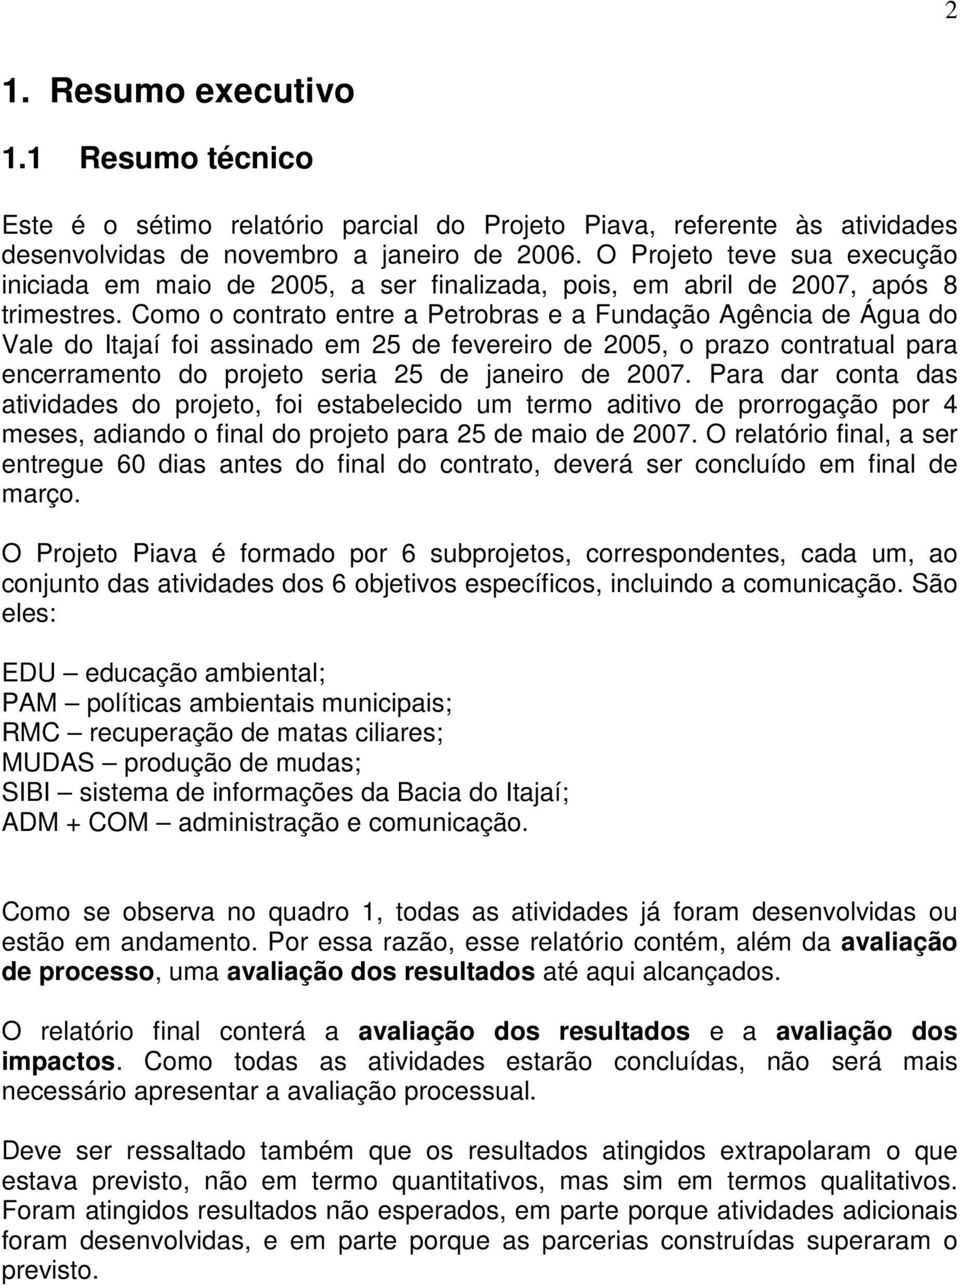 Como o contrato entre a Petrobras e a Fundação Agência de Água do Vale do Itajaí foi assinado em 25 de fevereiro de 2005, o prazo contratual para encerramento do projeto seria 25 de janeiro de 2007.